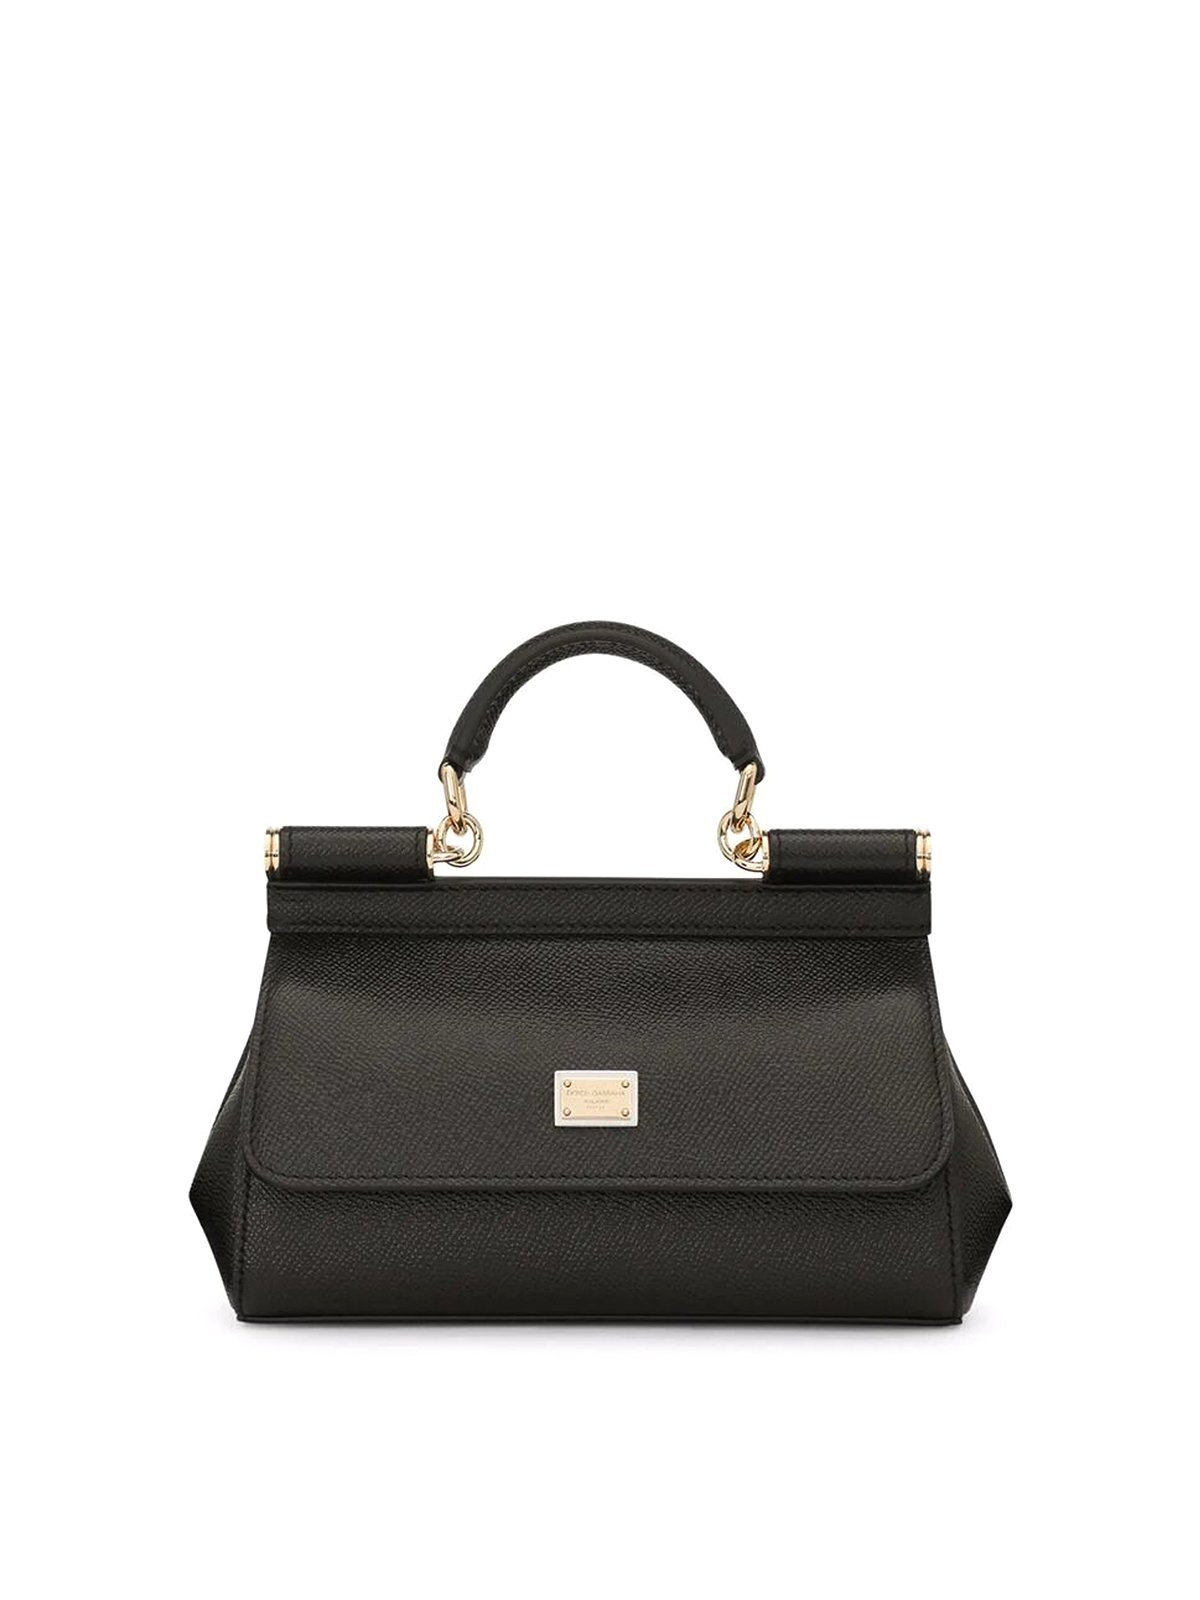 Dolce & Gabbana Sicily Small Bag In Black